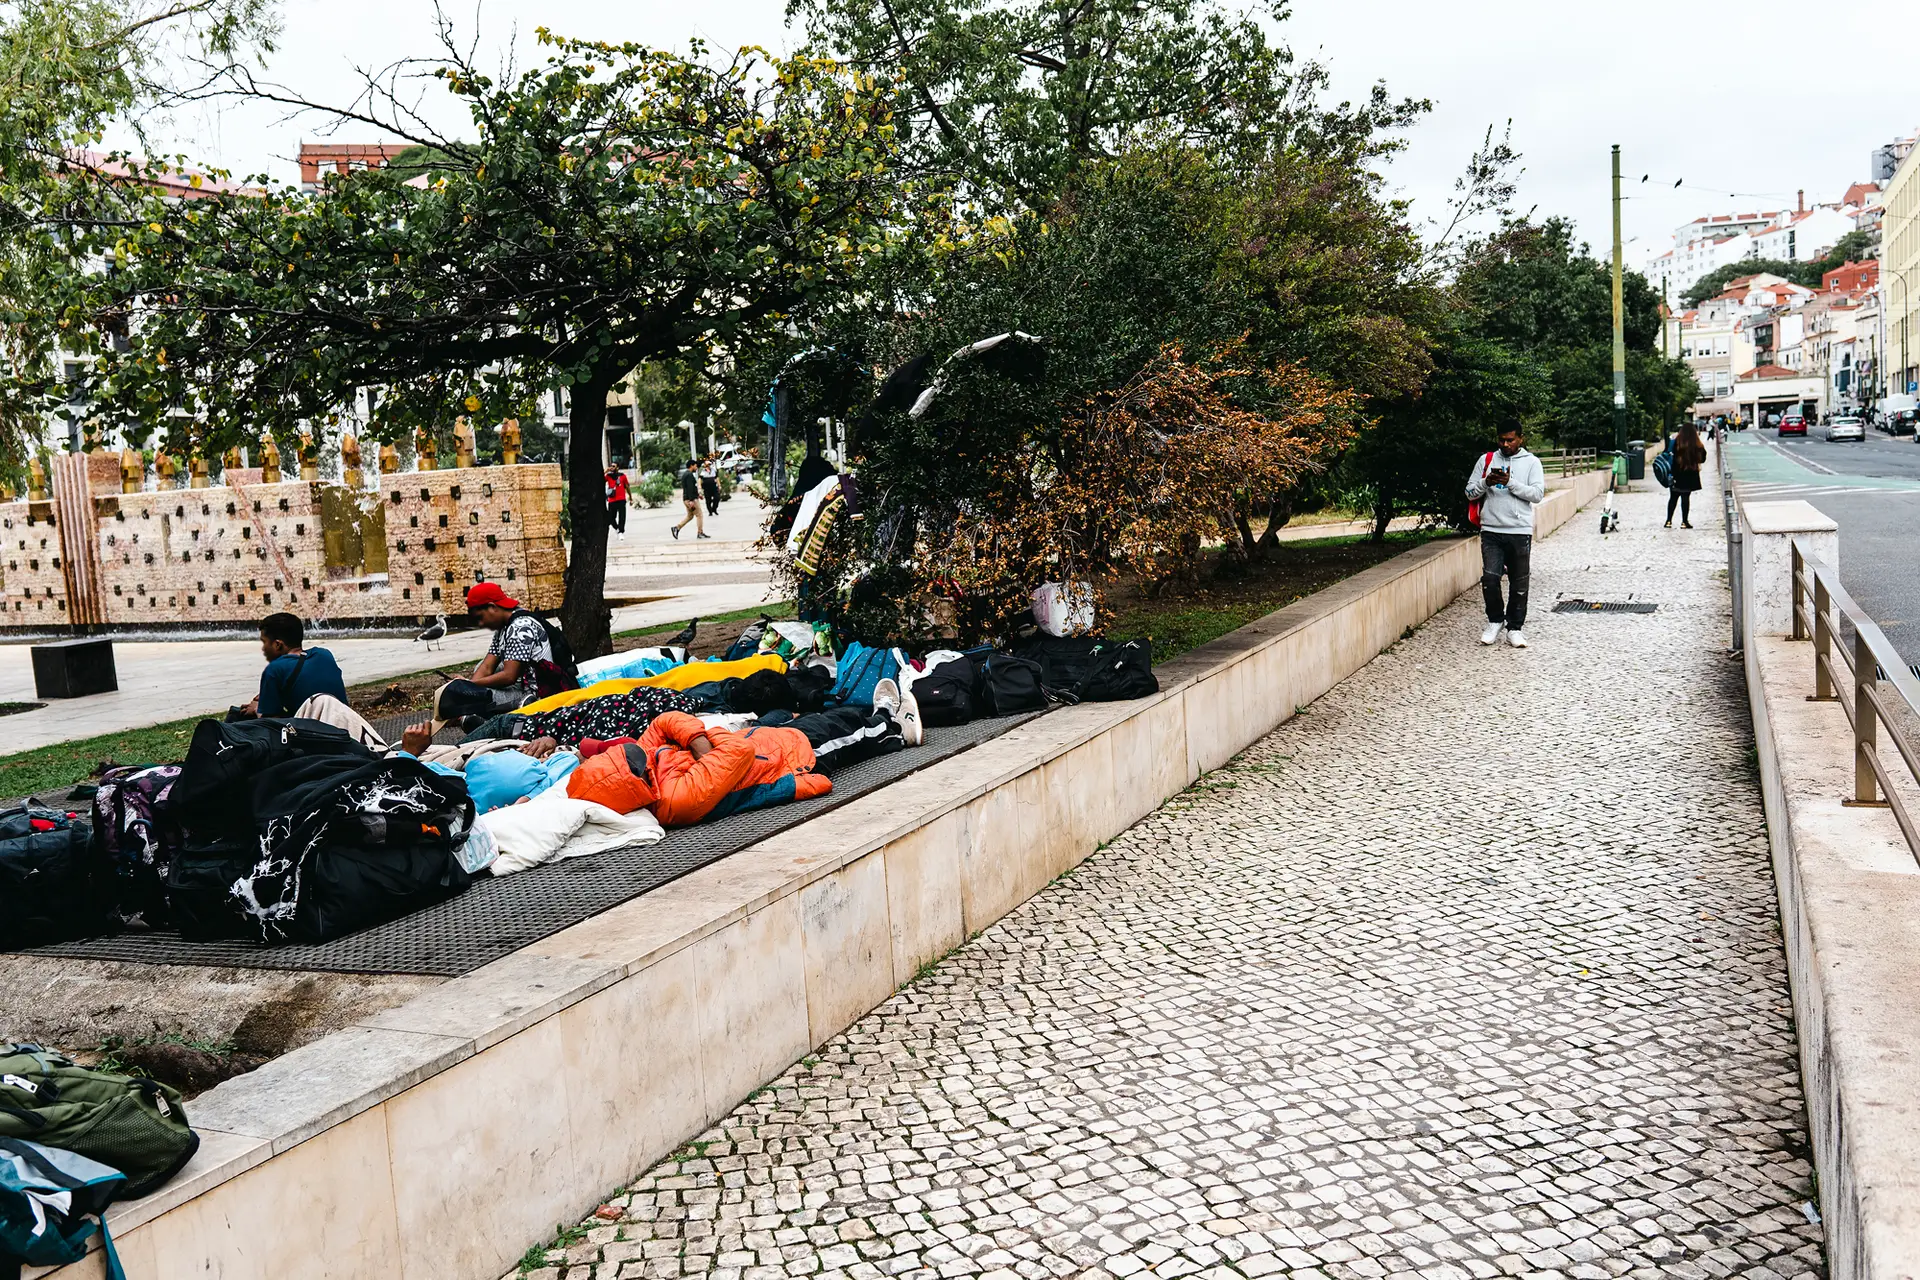 Jovens timorenses a viver na rua, em Lisboa, em redor da Praça do Martim Moniz